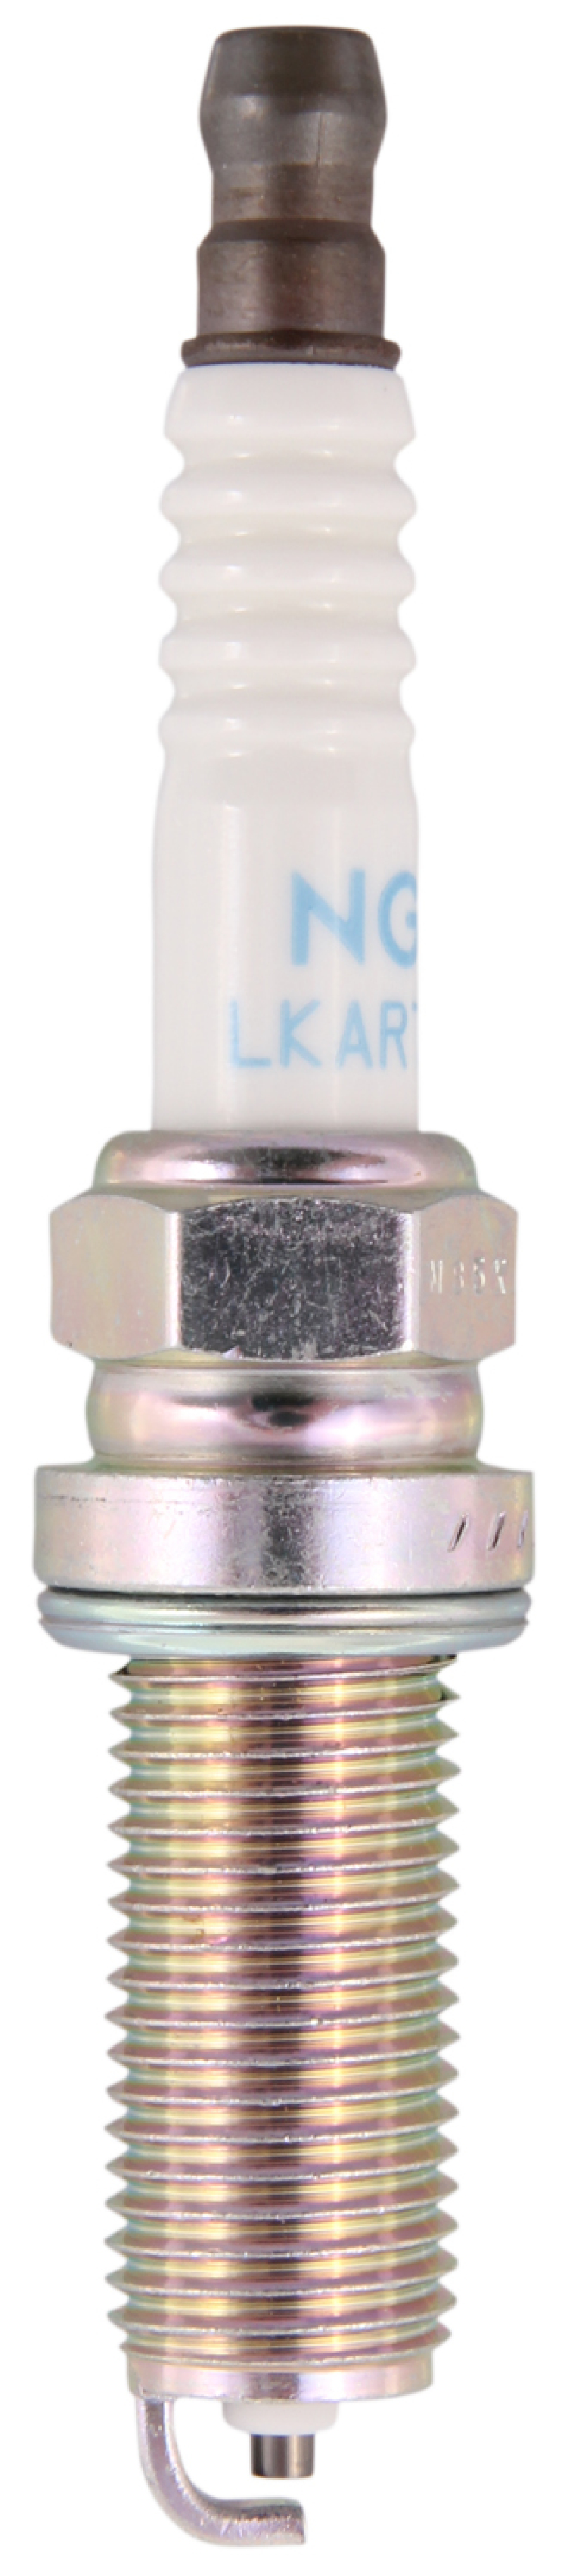 NGK Standard Spark Plug Box of 4 (LKAR7C-9) - 93961